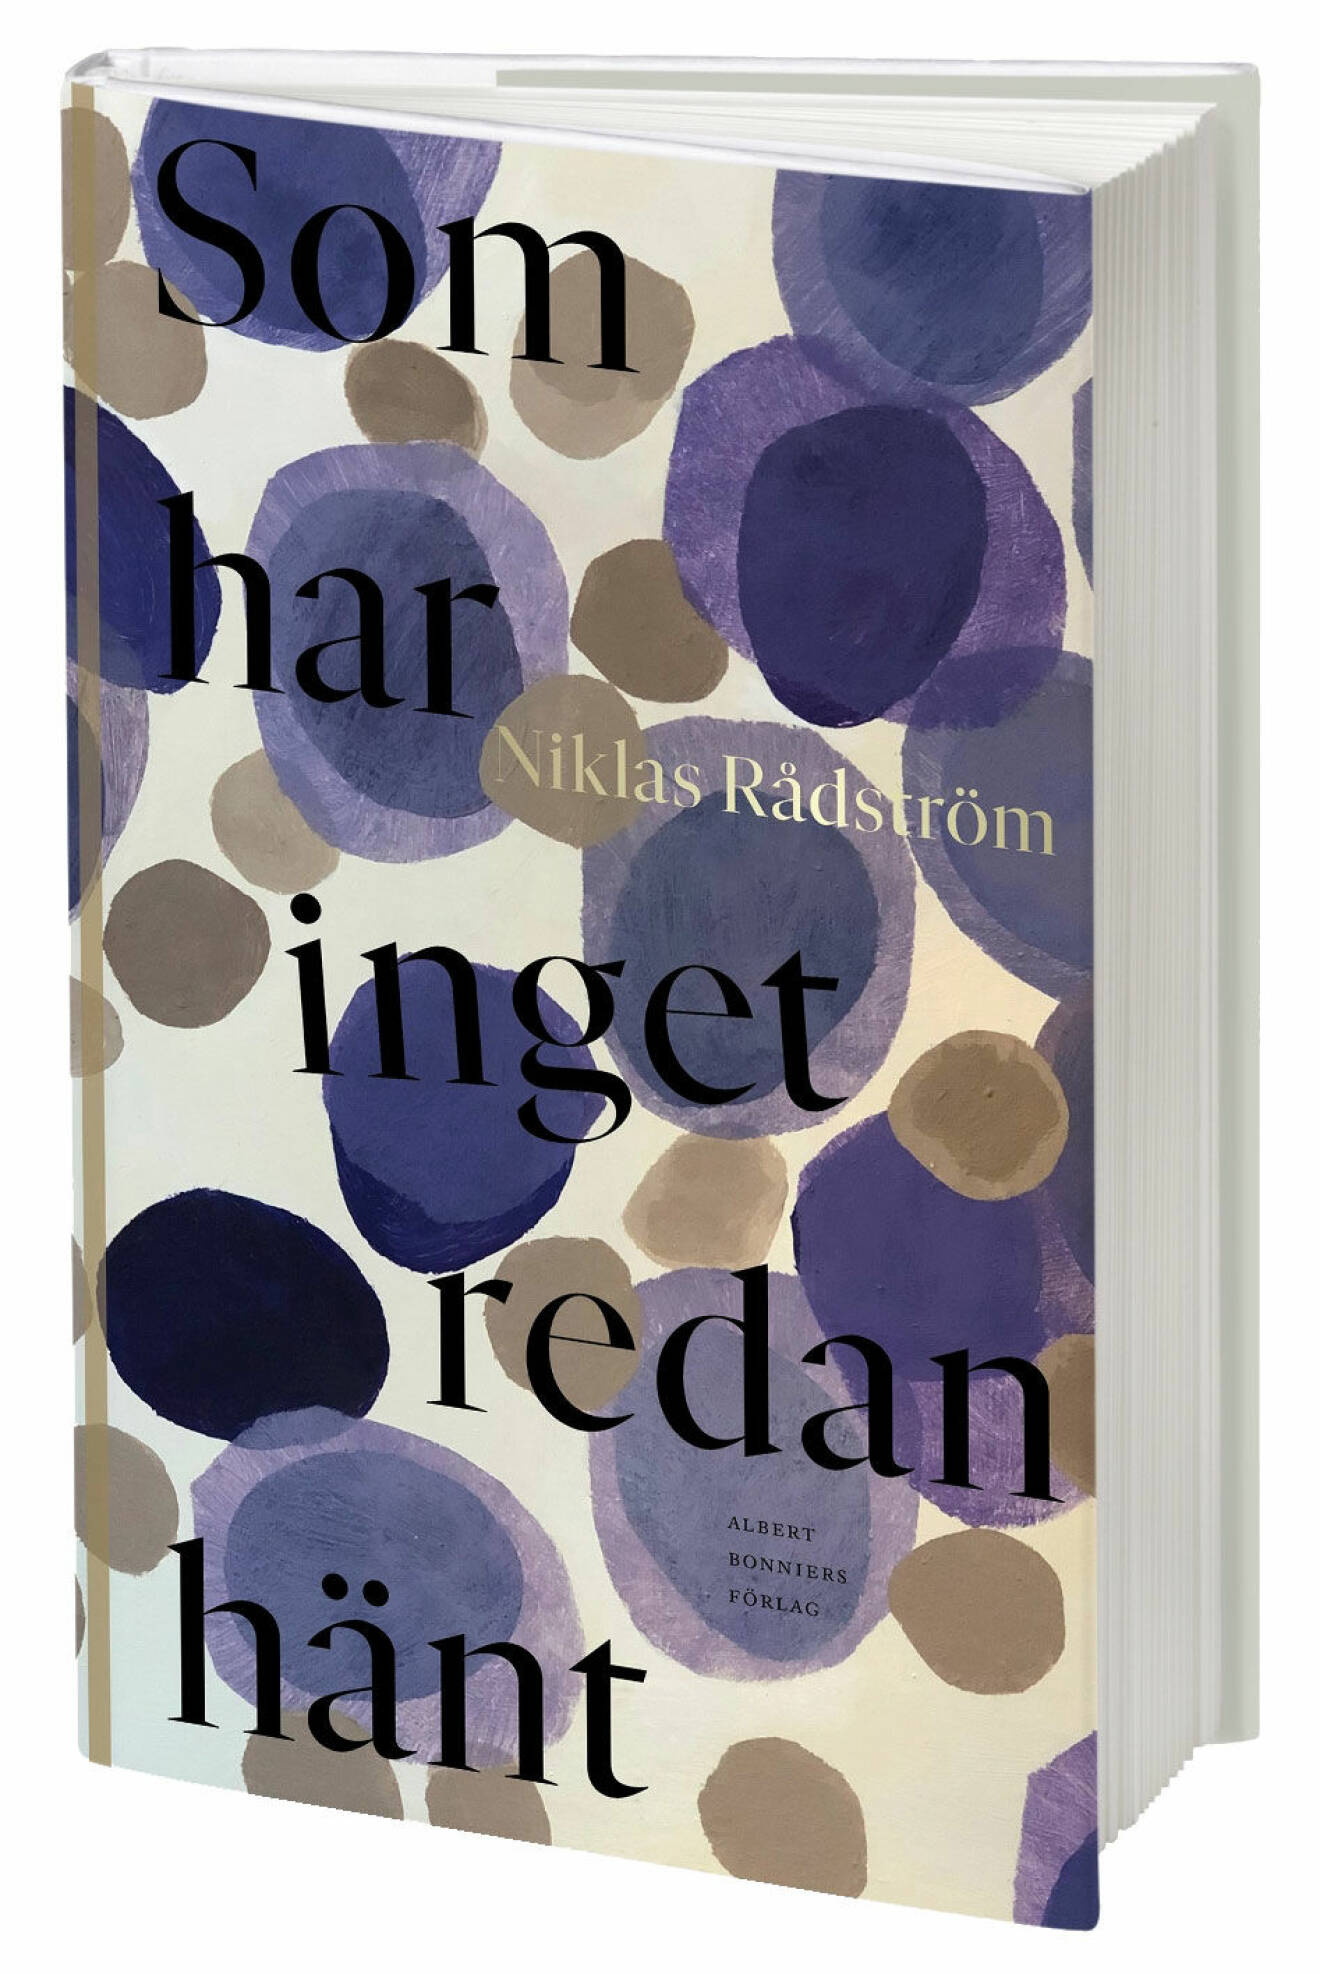 Som har inget redan hänt, Niklas Rådström, självbiografi (Albert Bonniers förlag).